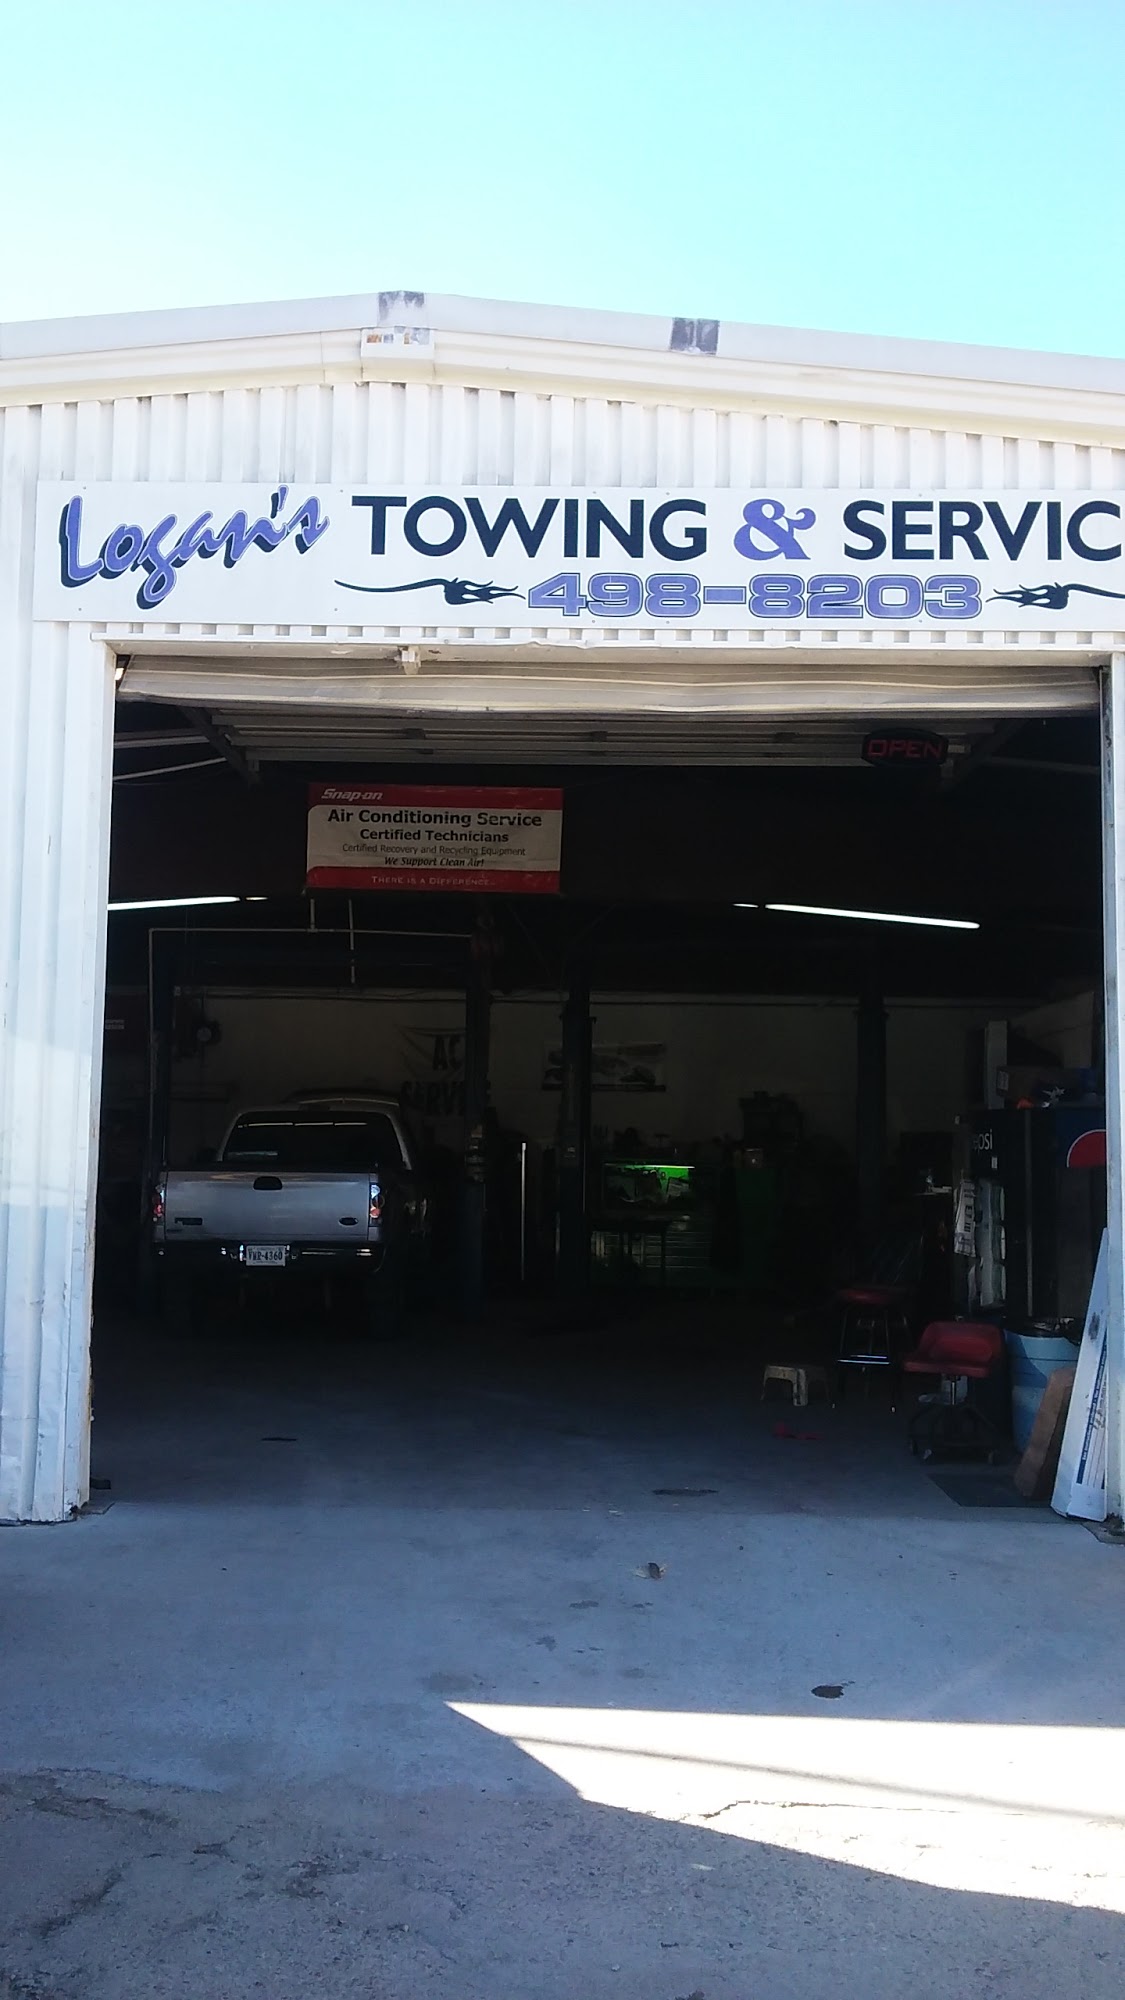 Logan's Auto Repair